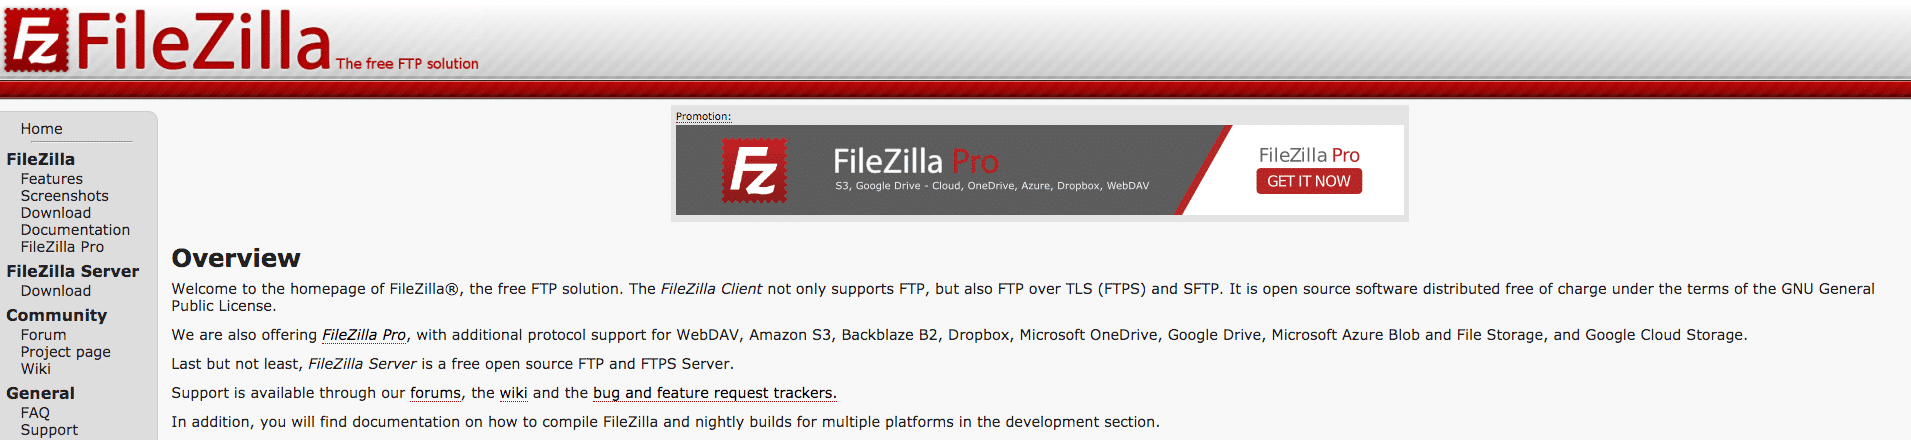 Die FileZilla Startseite